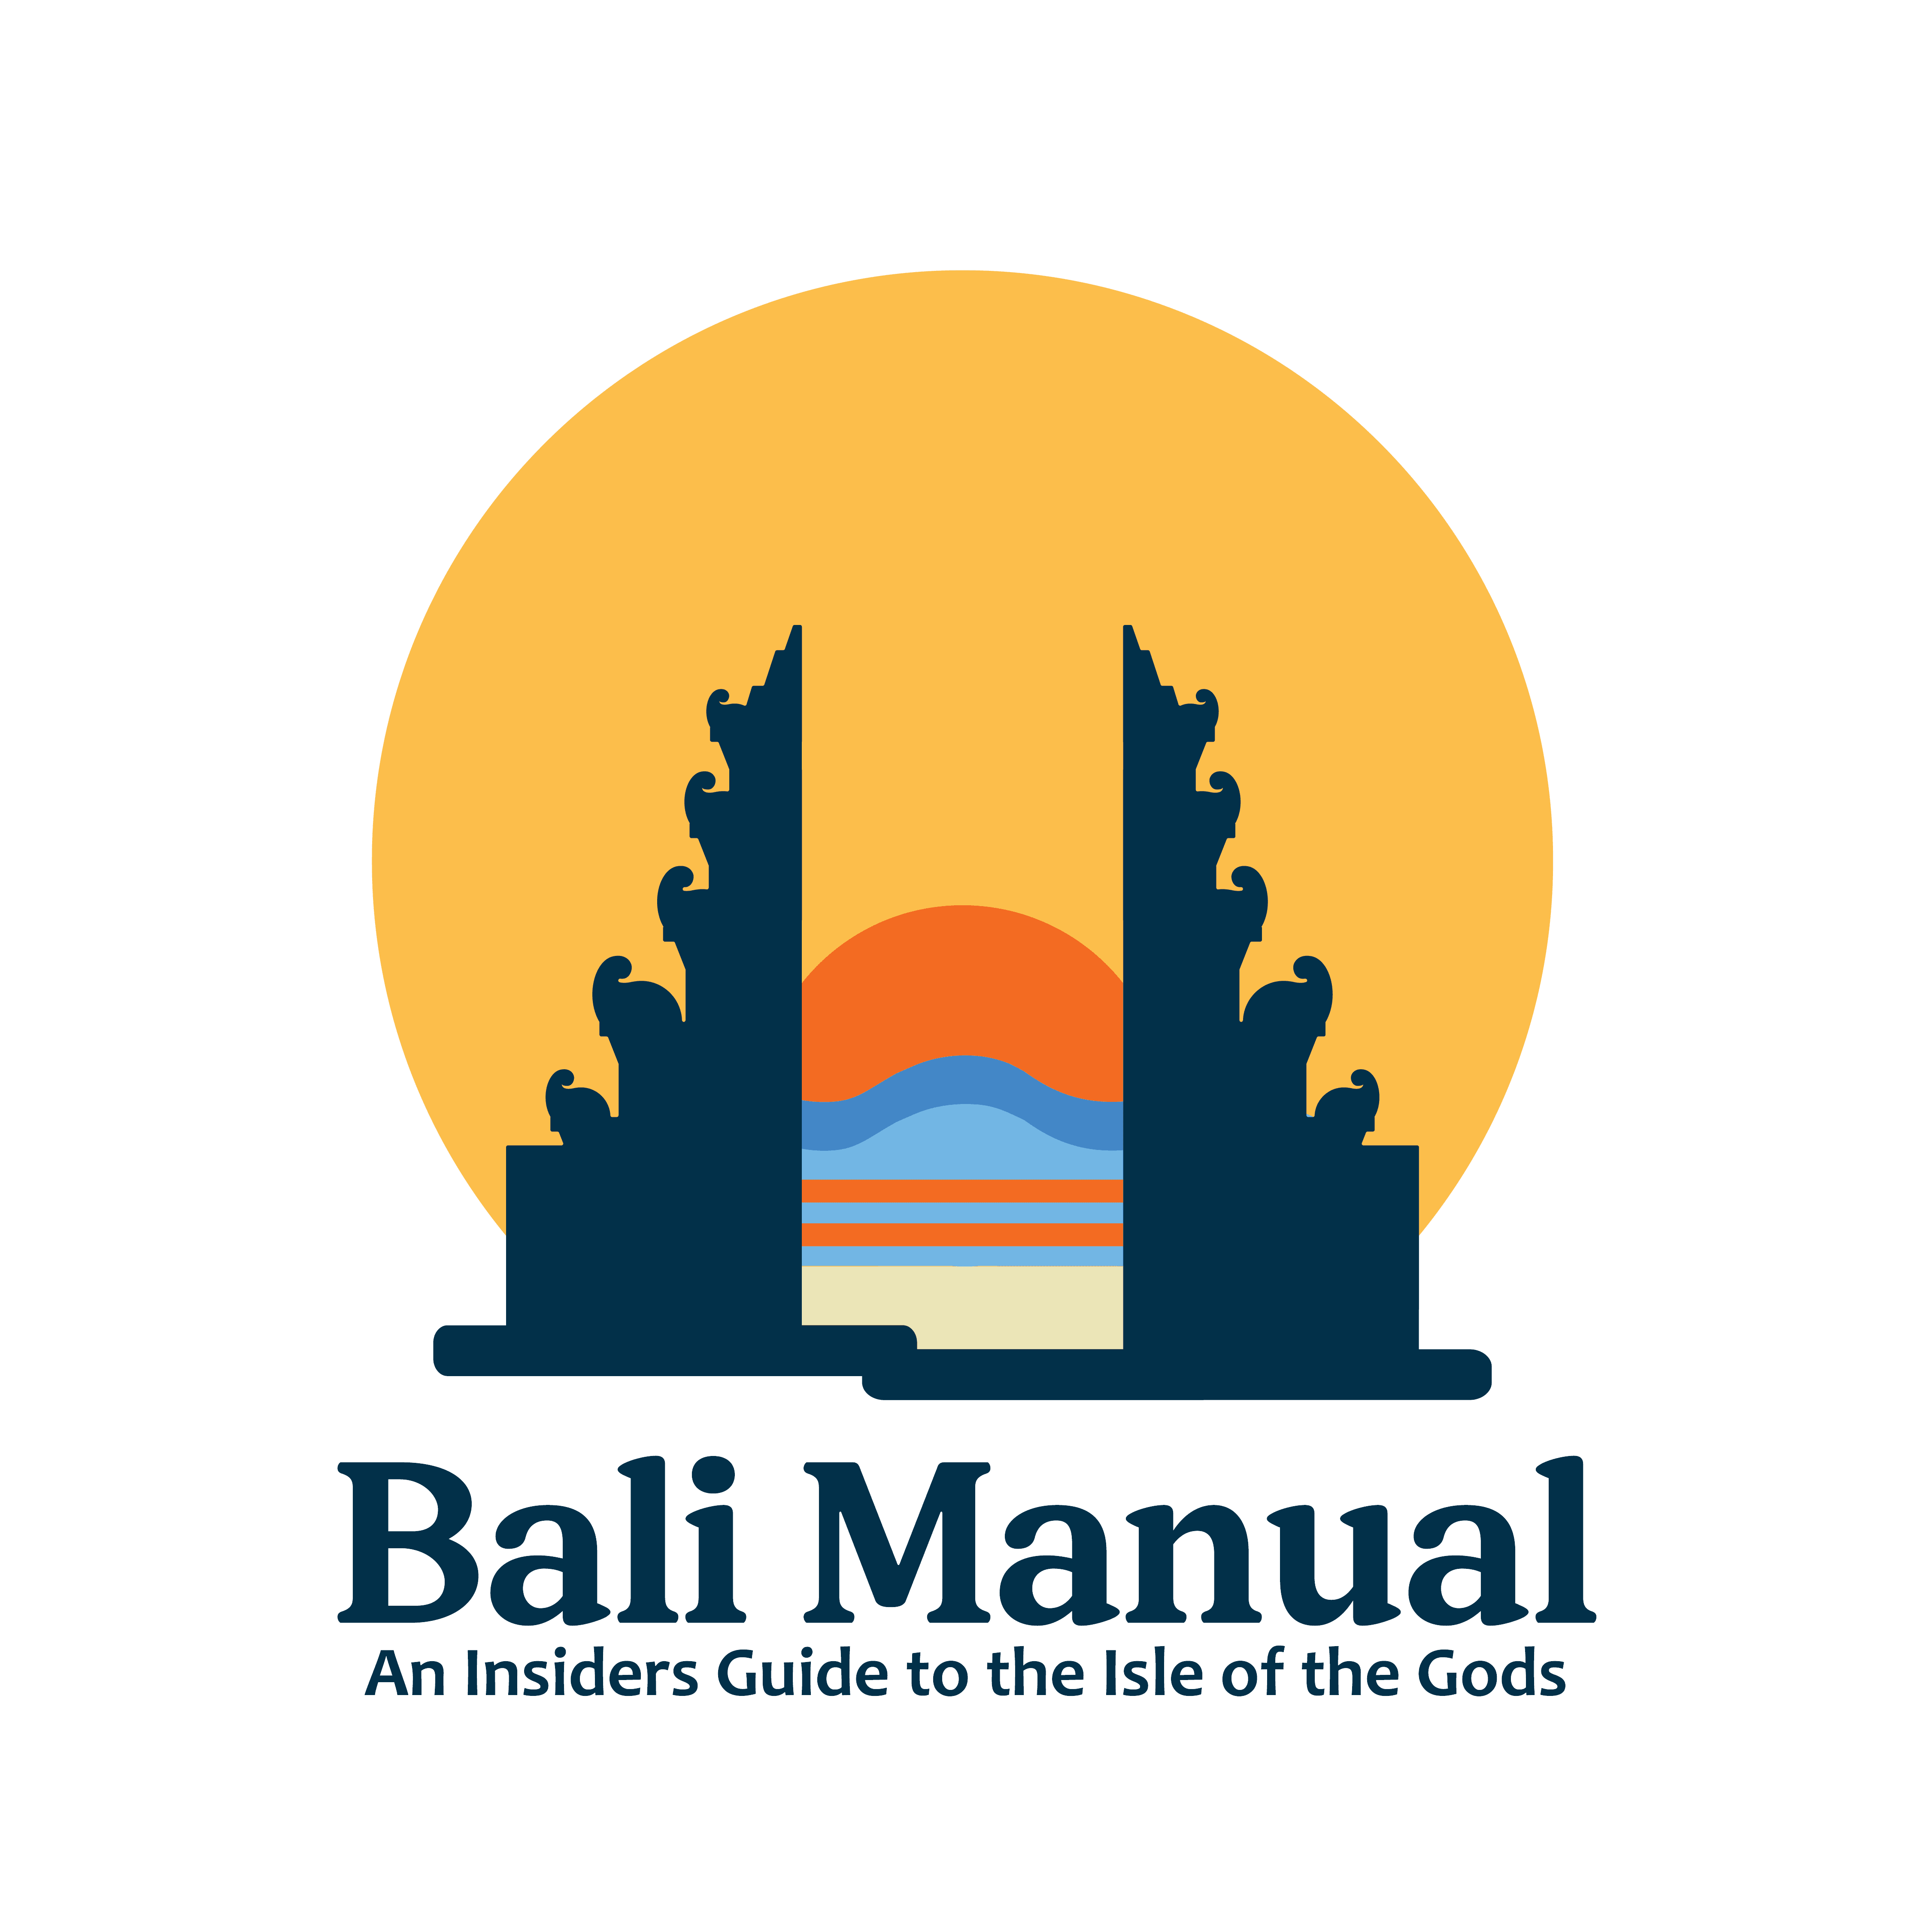 The Bali Manual